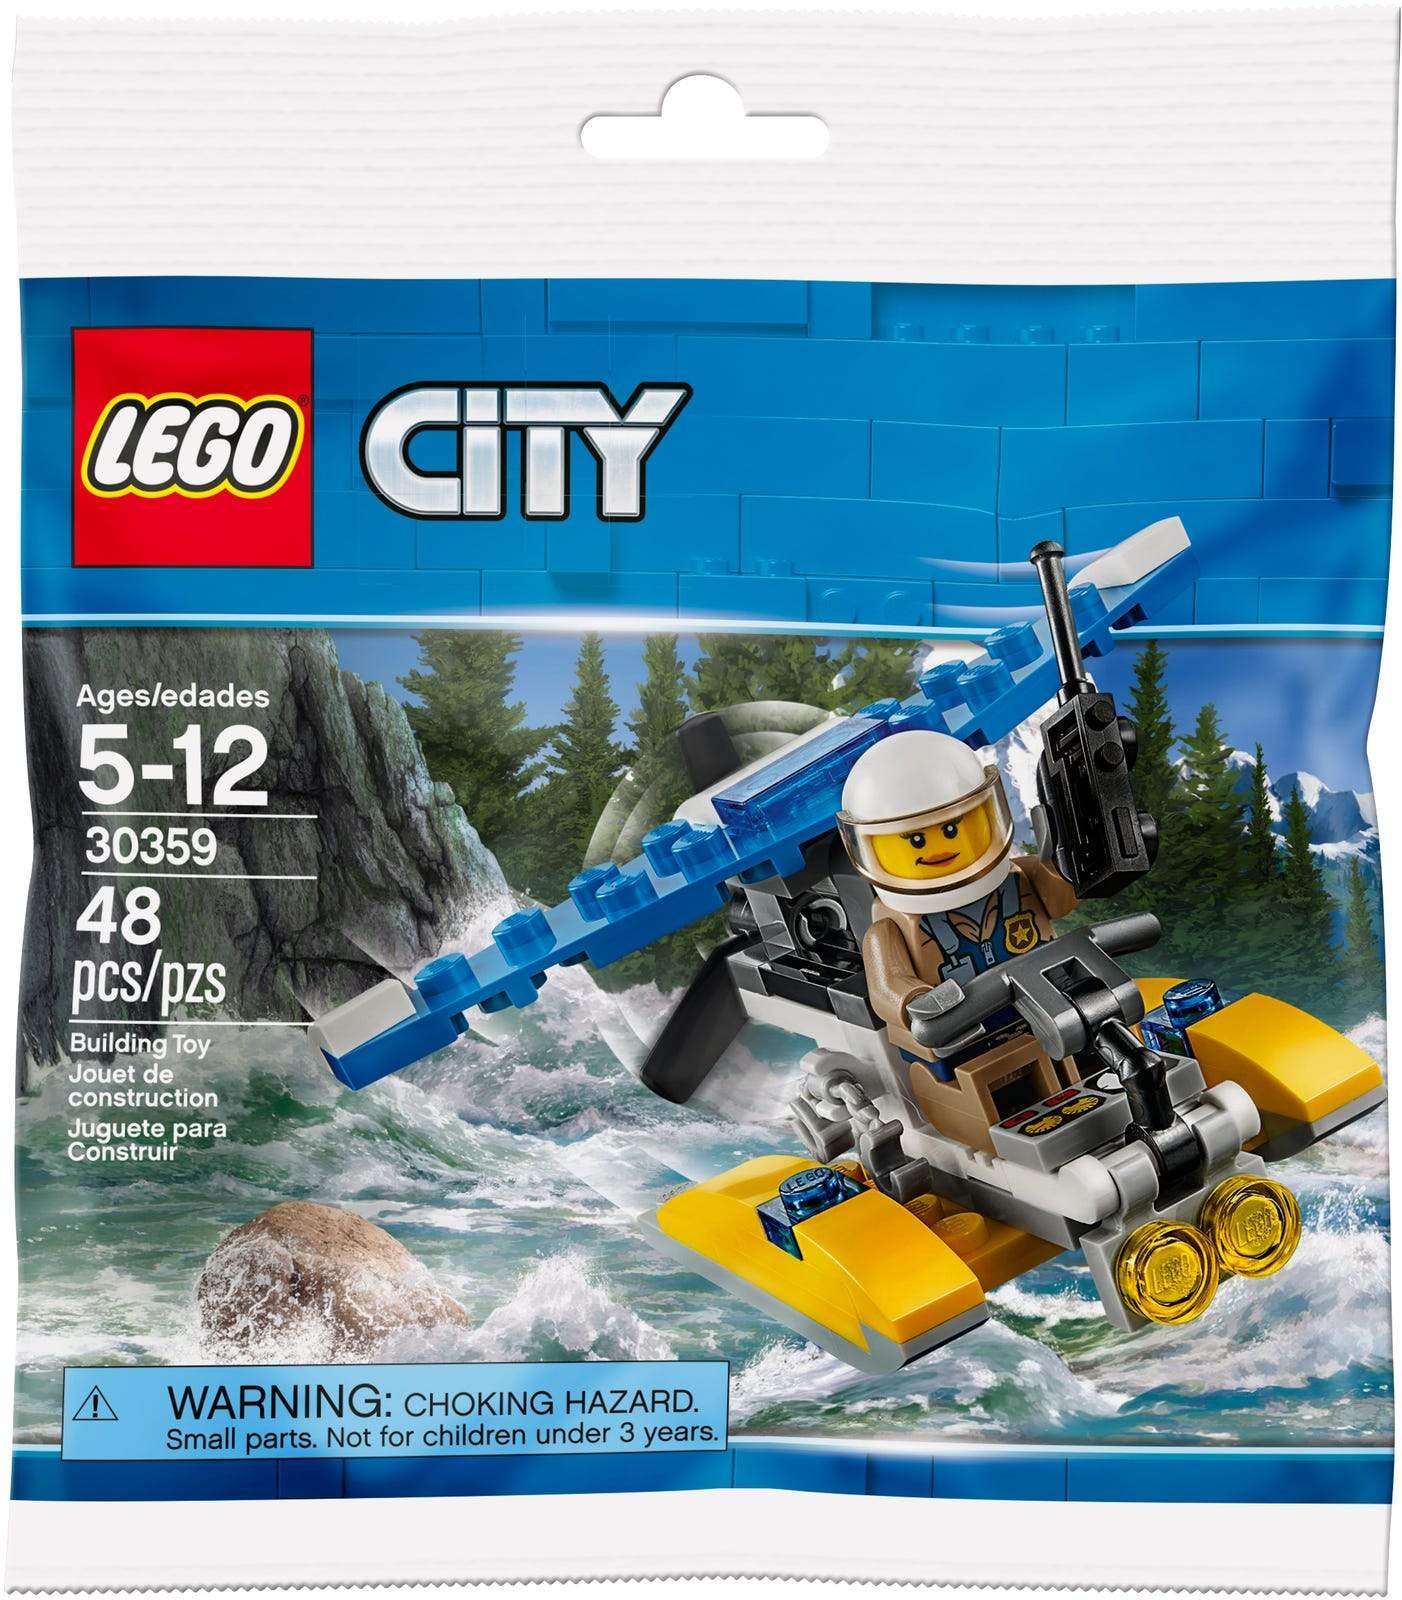 Policijski hidroavion - LEGO® Store Hrvatska